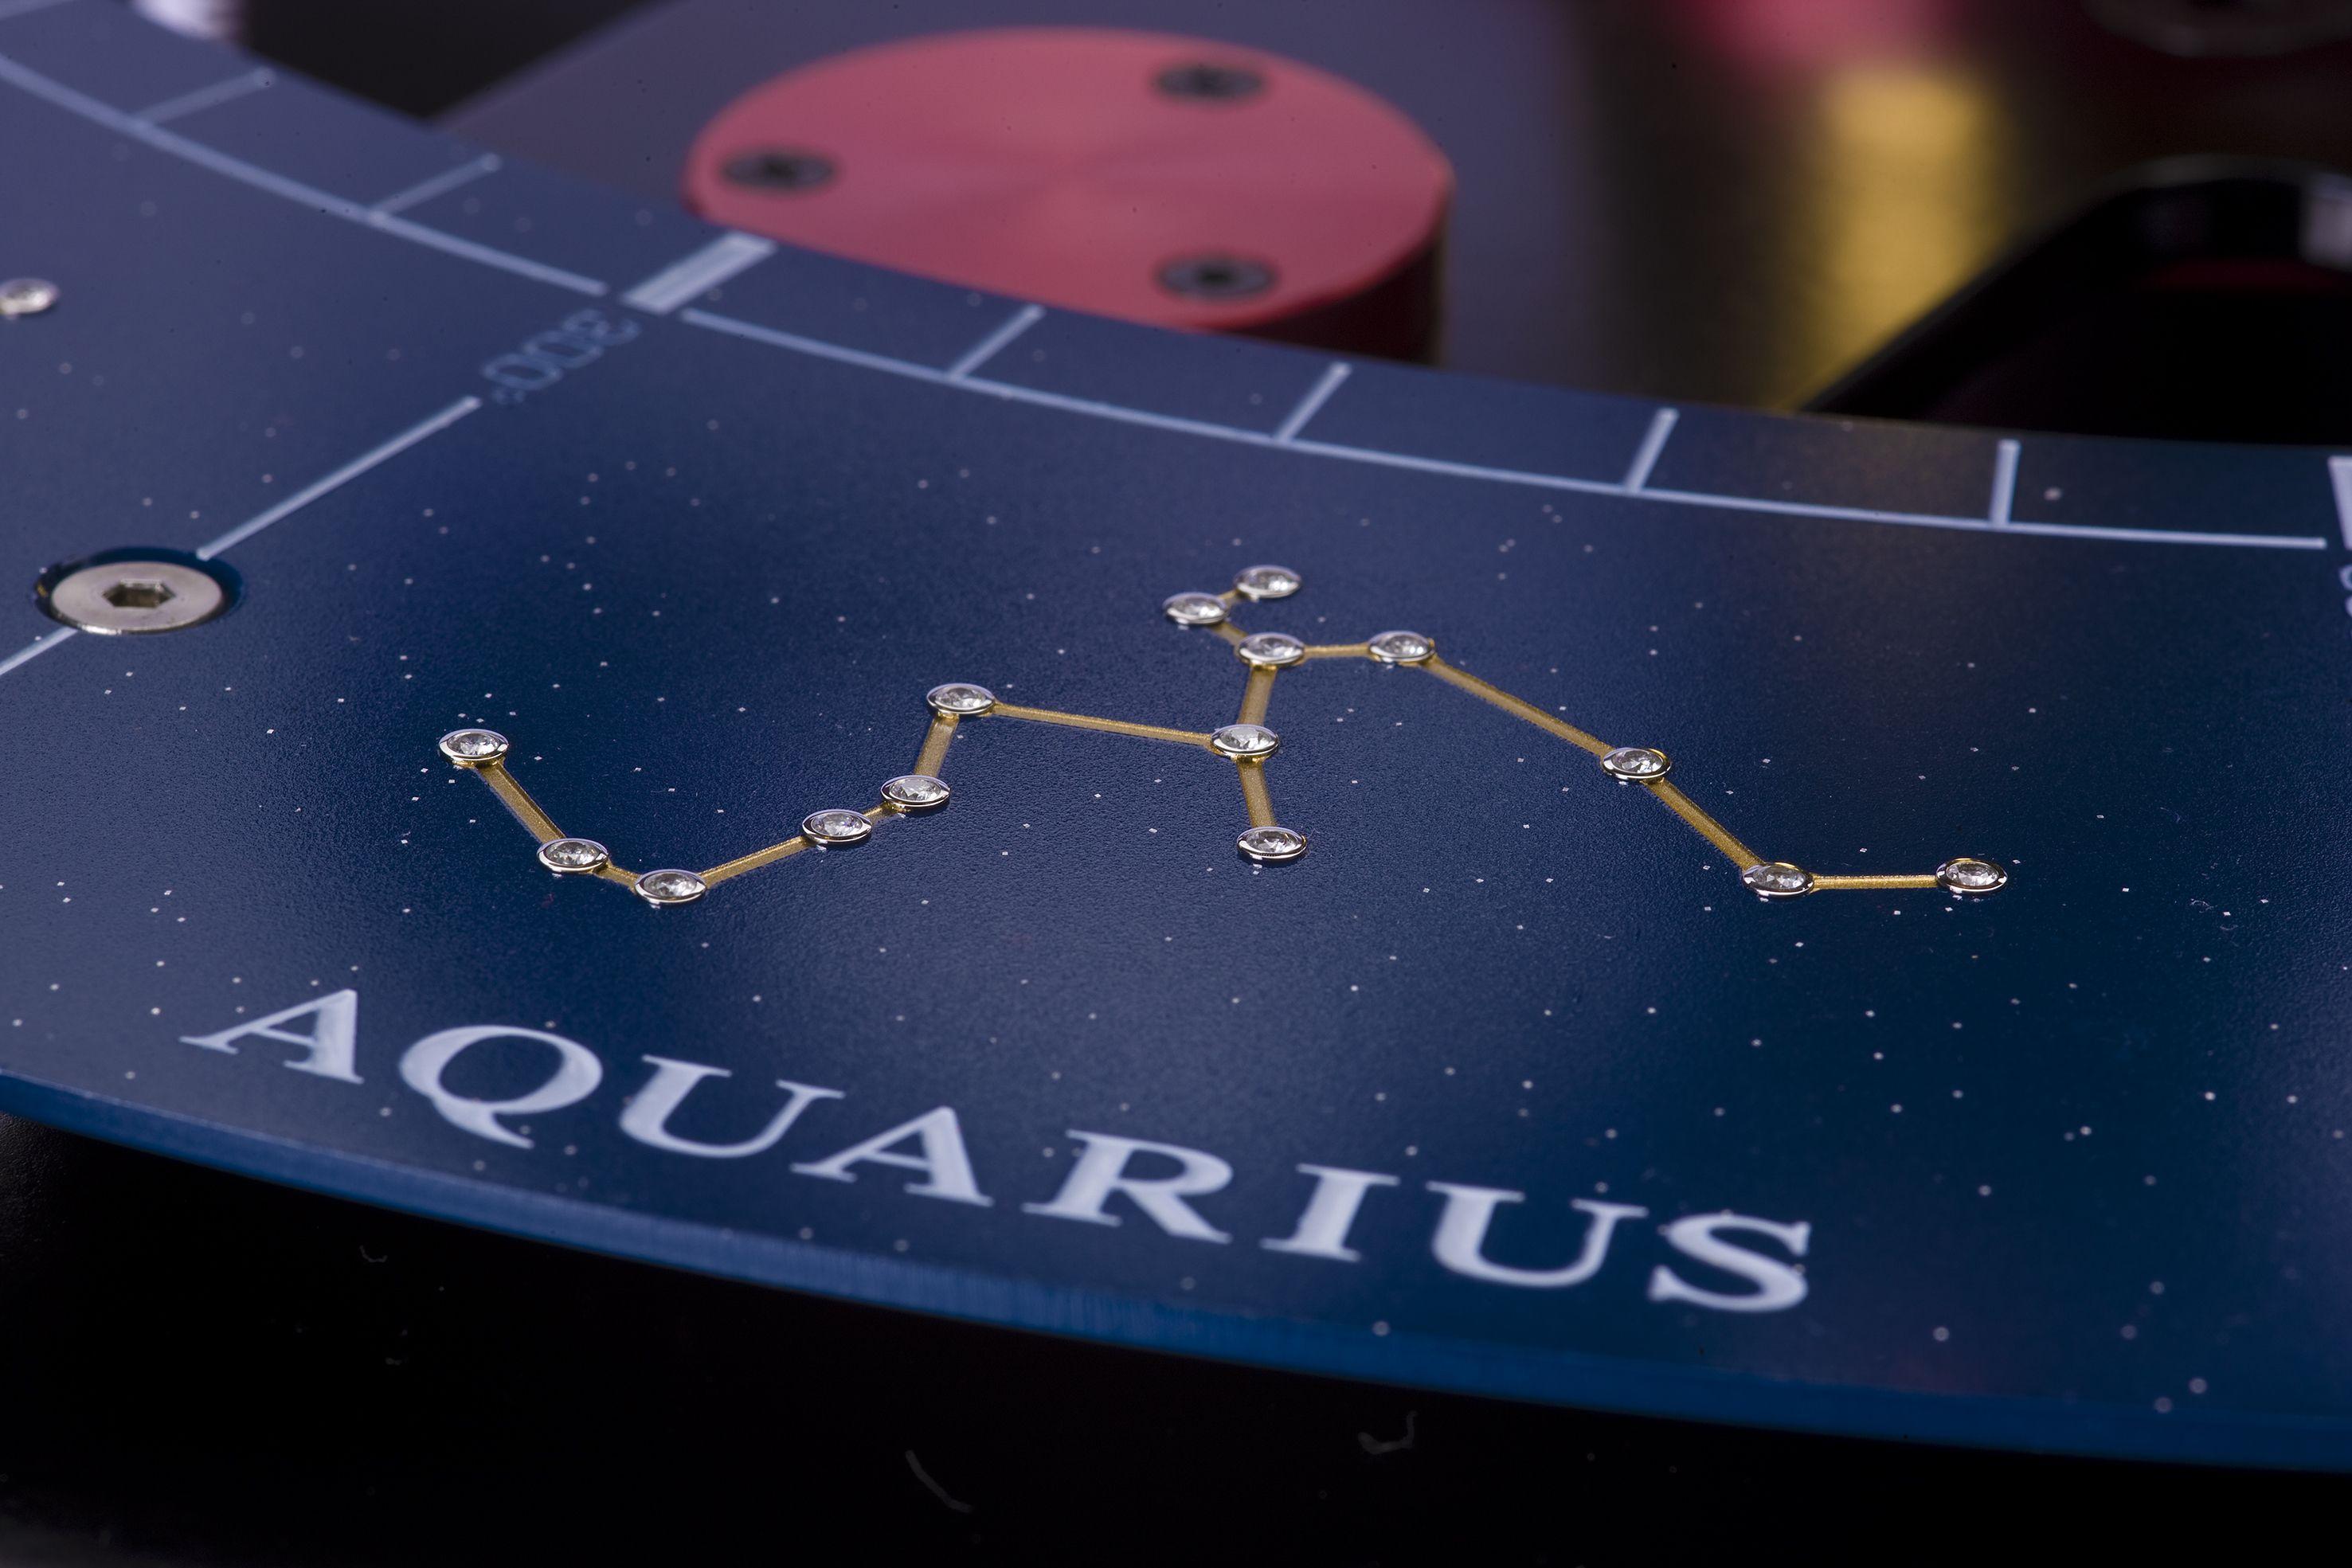 The constellation Aquarius wallpaper and image